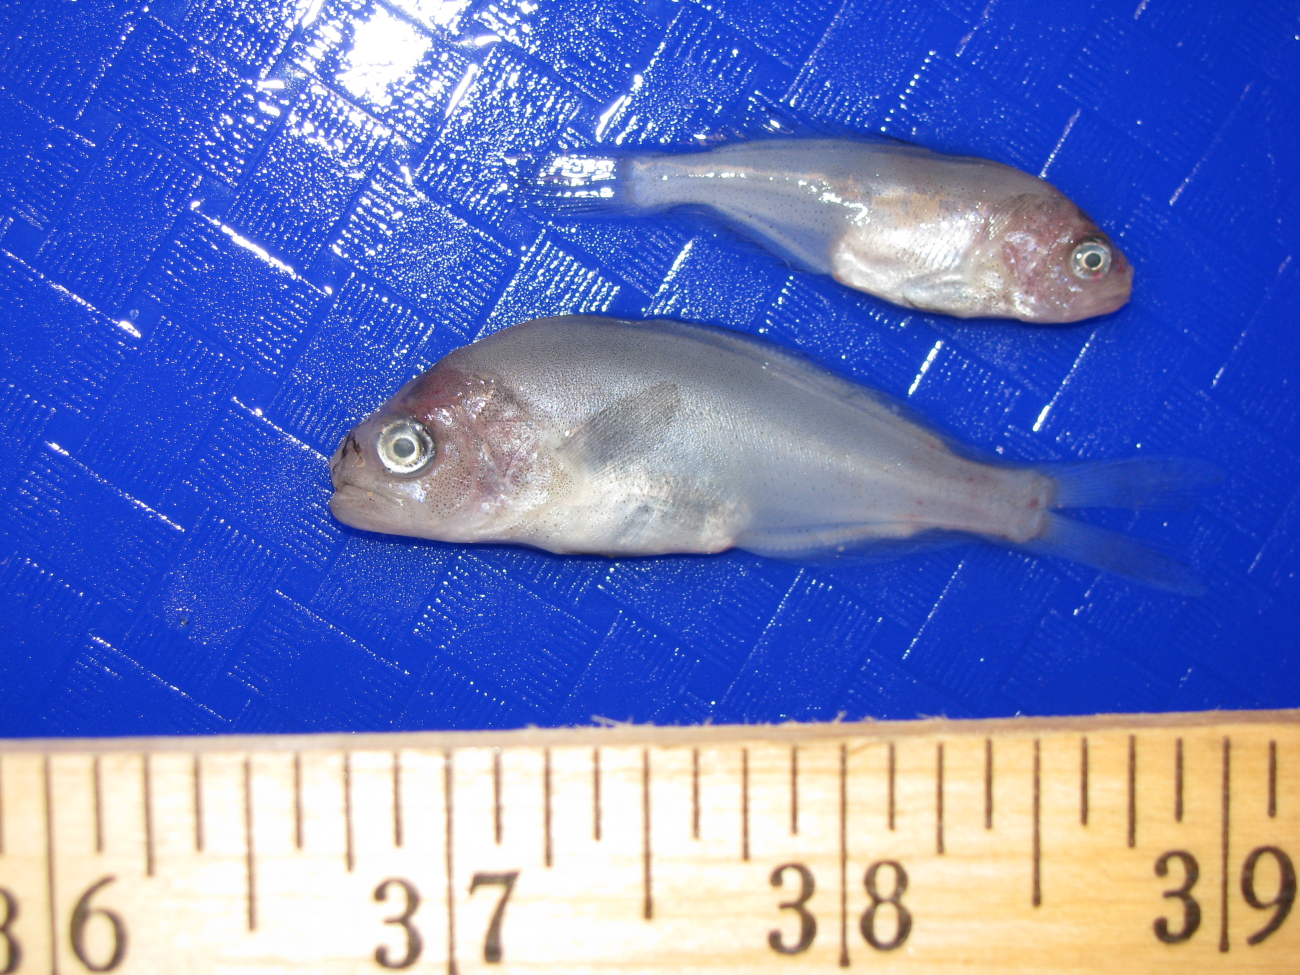 Measuring juvenile prowfish